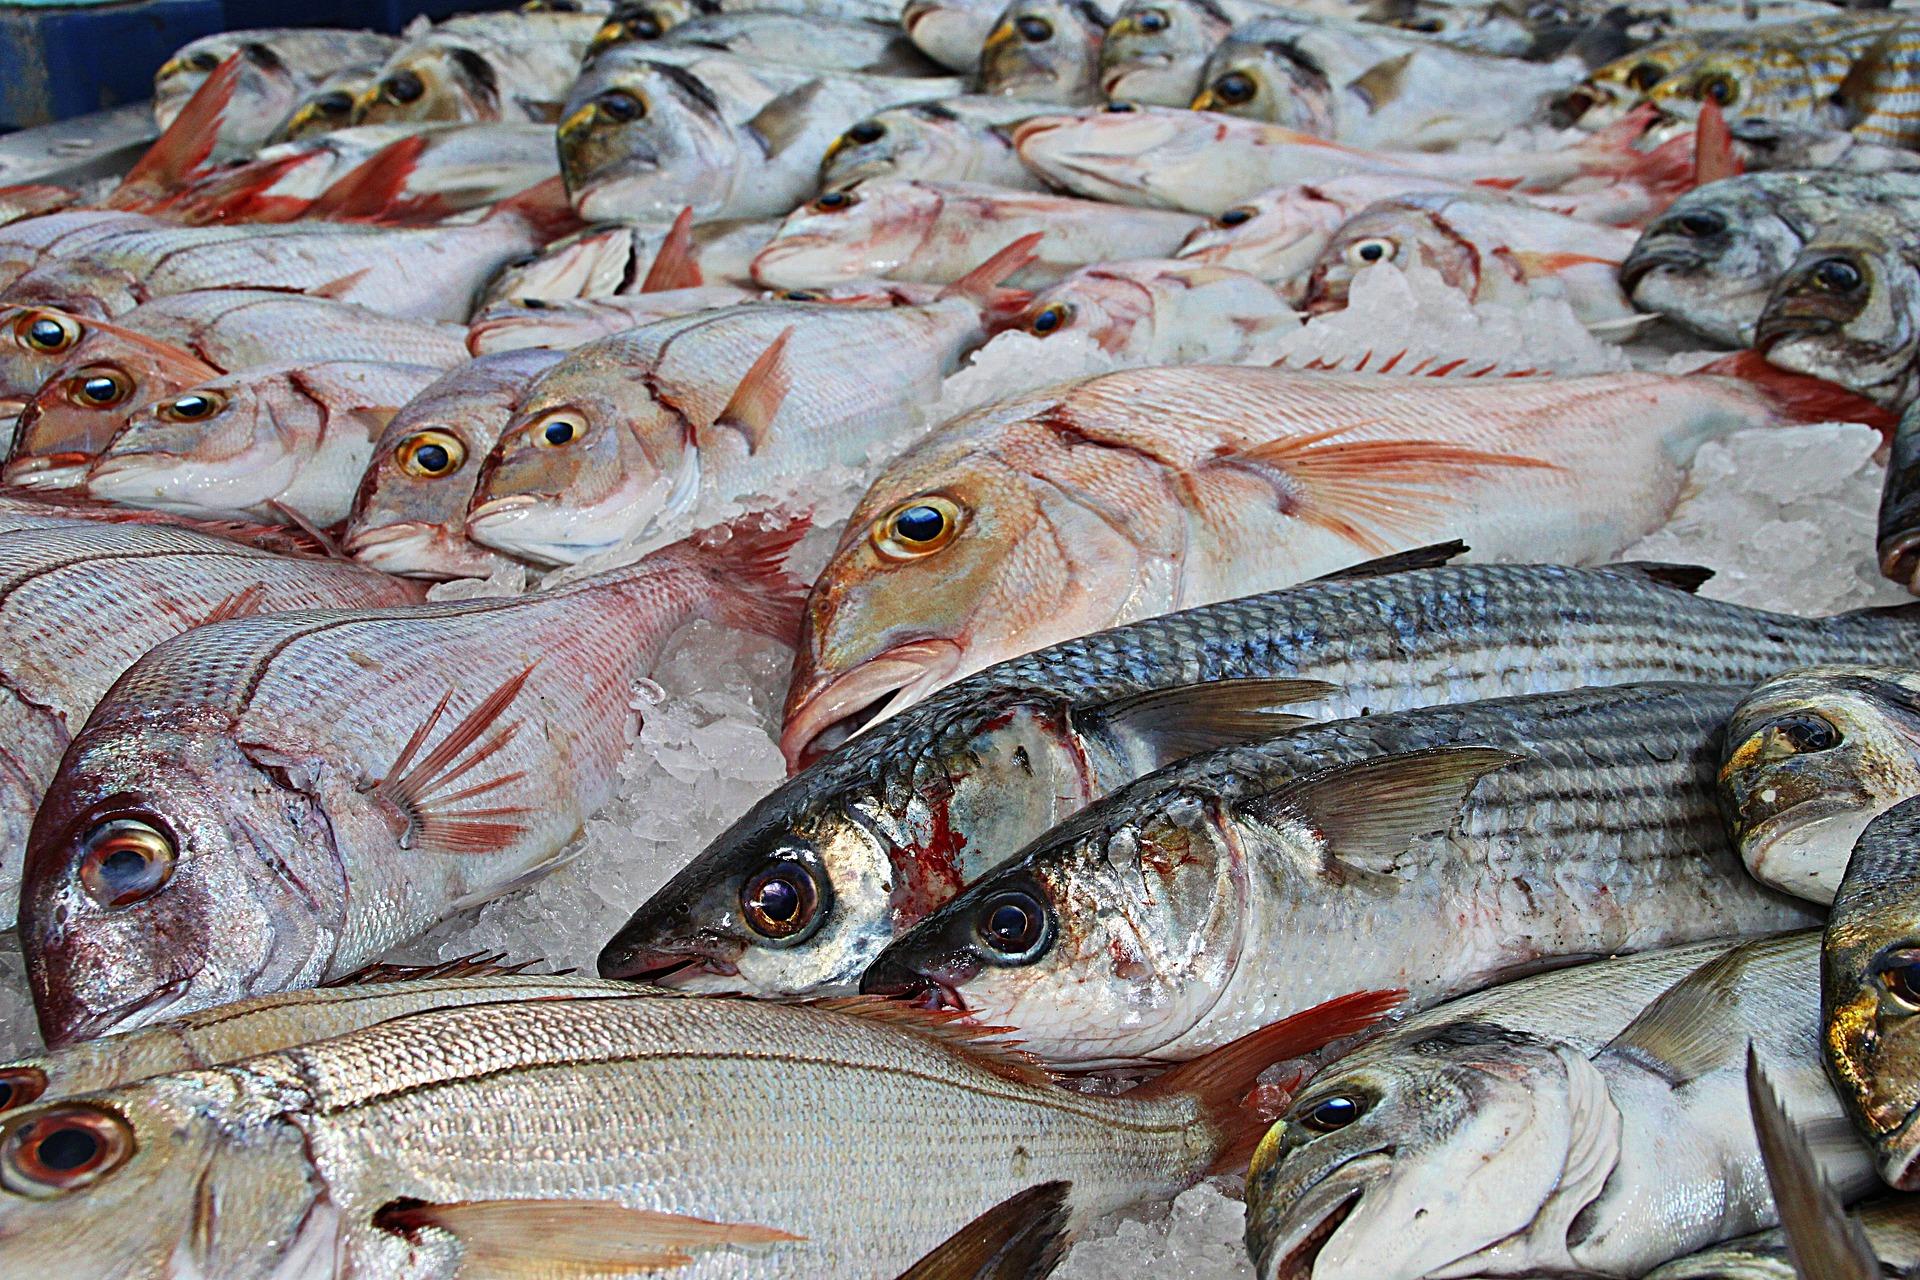 Європейська Комісія проводить аудит української рибної продукції, яка експортується до ЄС